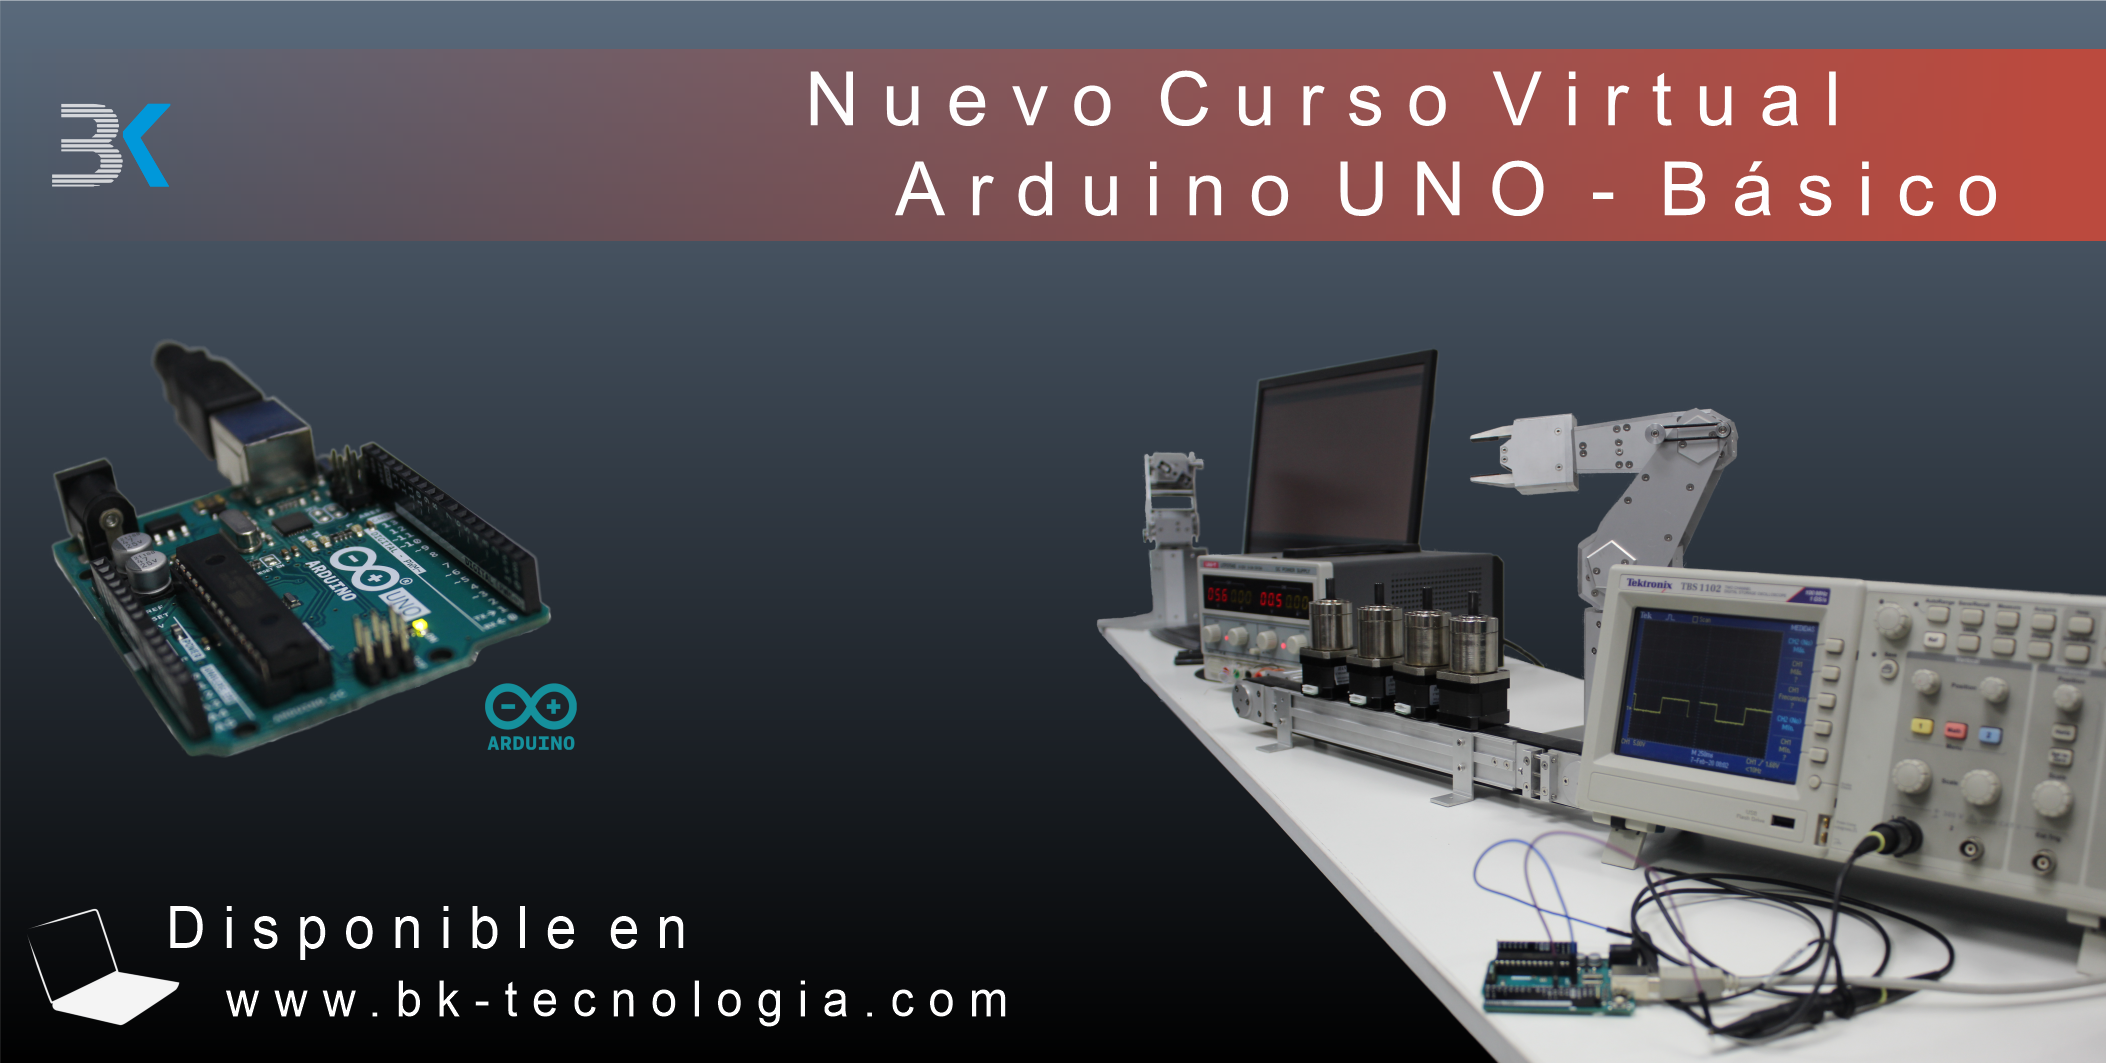 get_the_best_Arduino Uno_ad